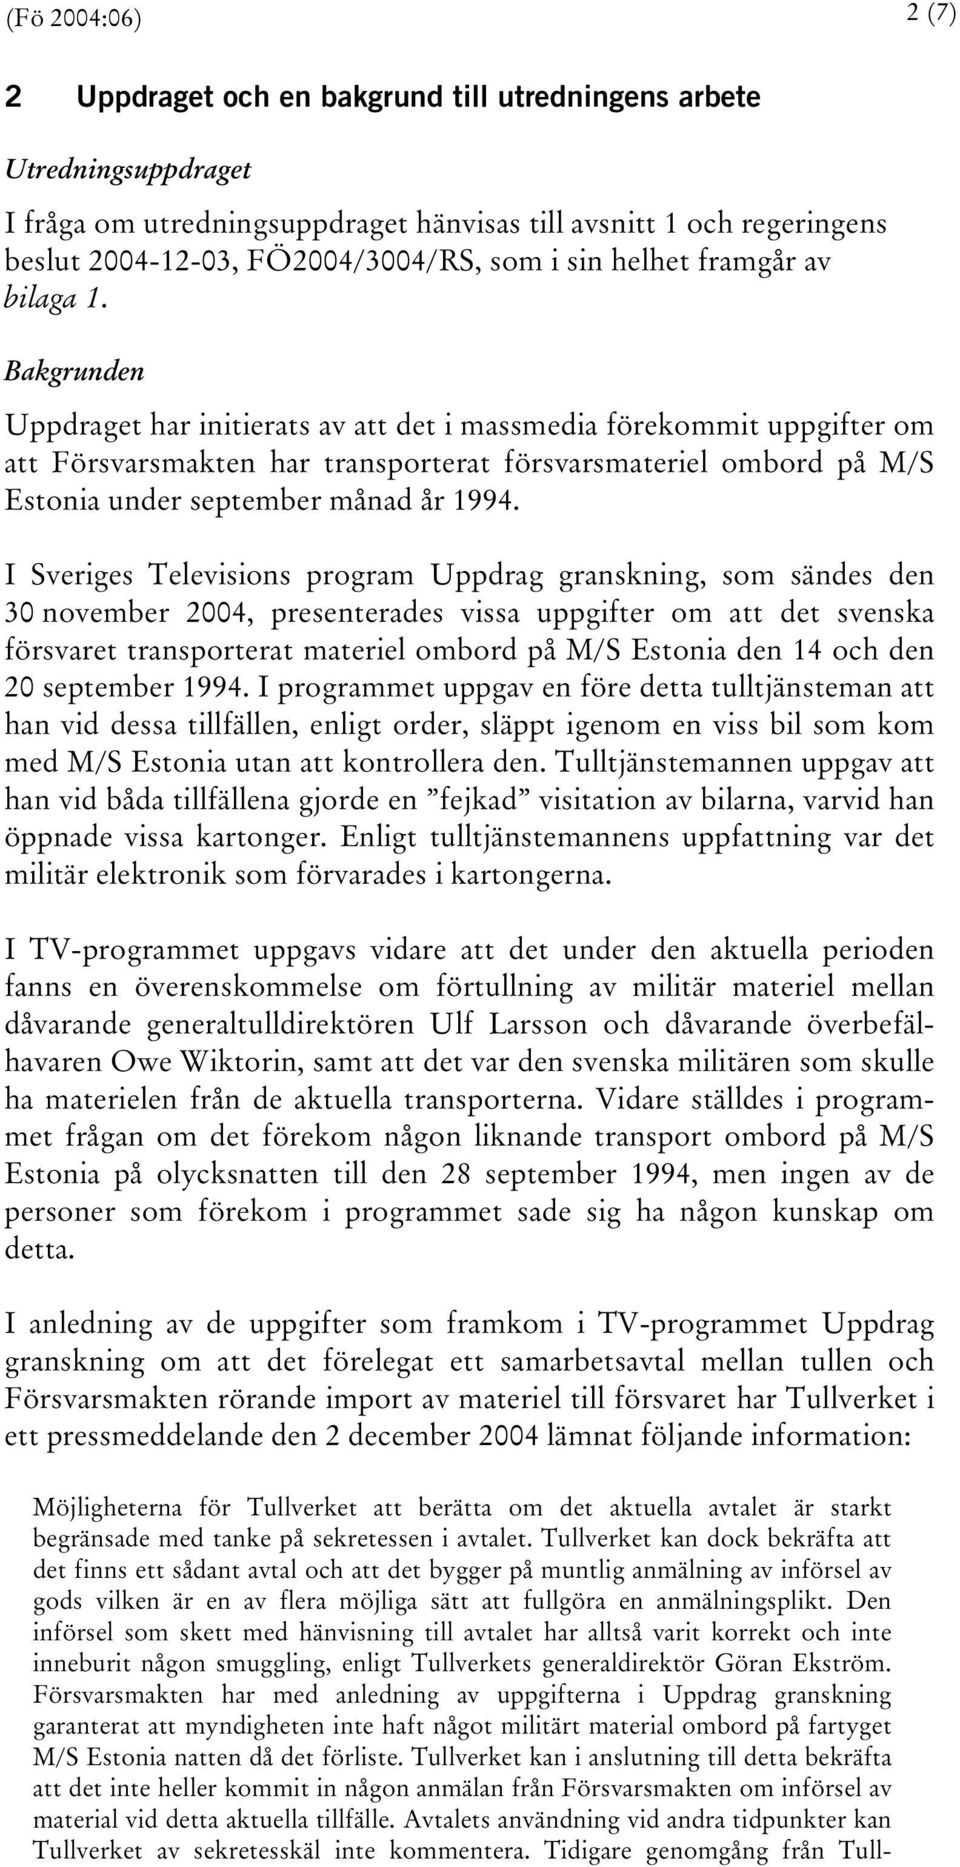 Bakgrunden Uppdraget har initierats av att det i massmedia förekommit uppgifter om att Försvarsmakten har transporterat försvarsmateriel ombord på M/S Estonia under september månad år 1994.